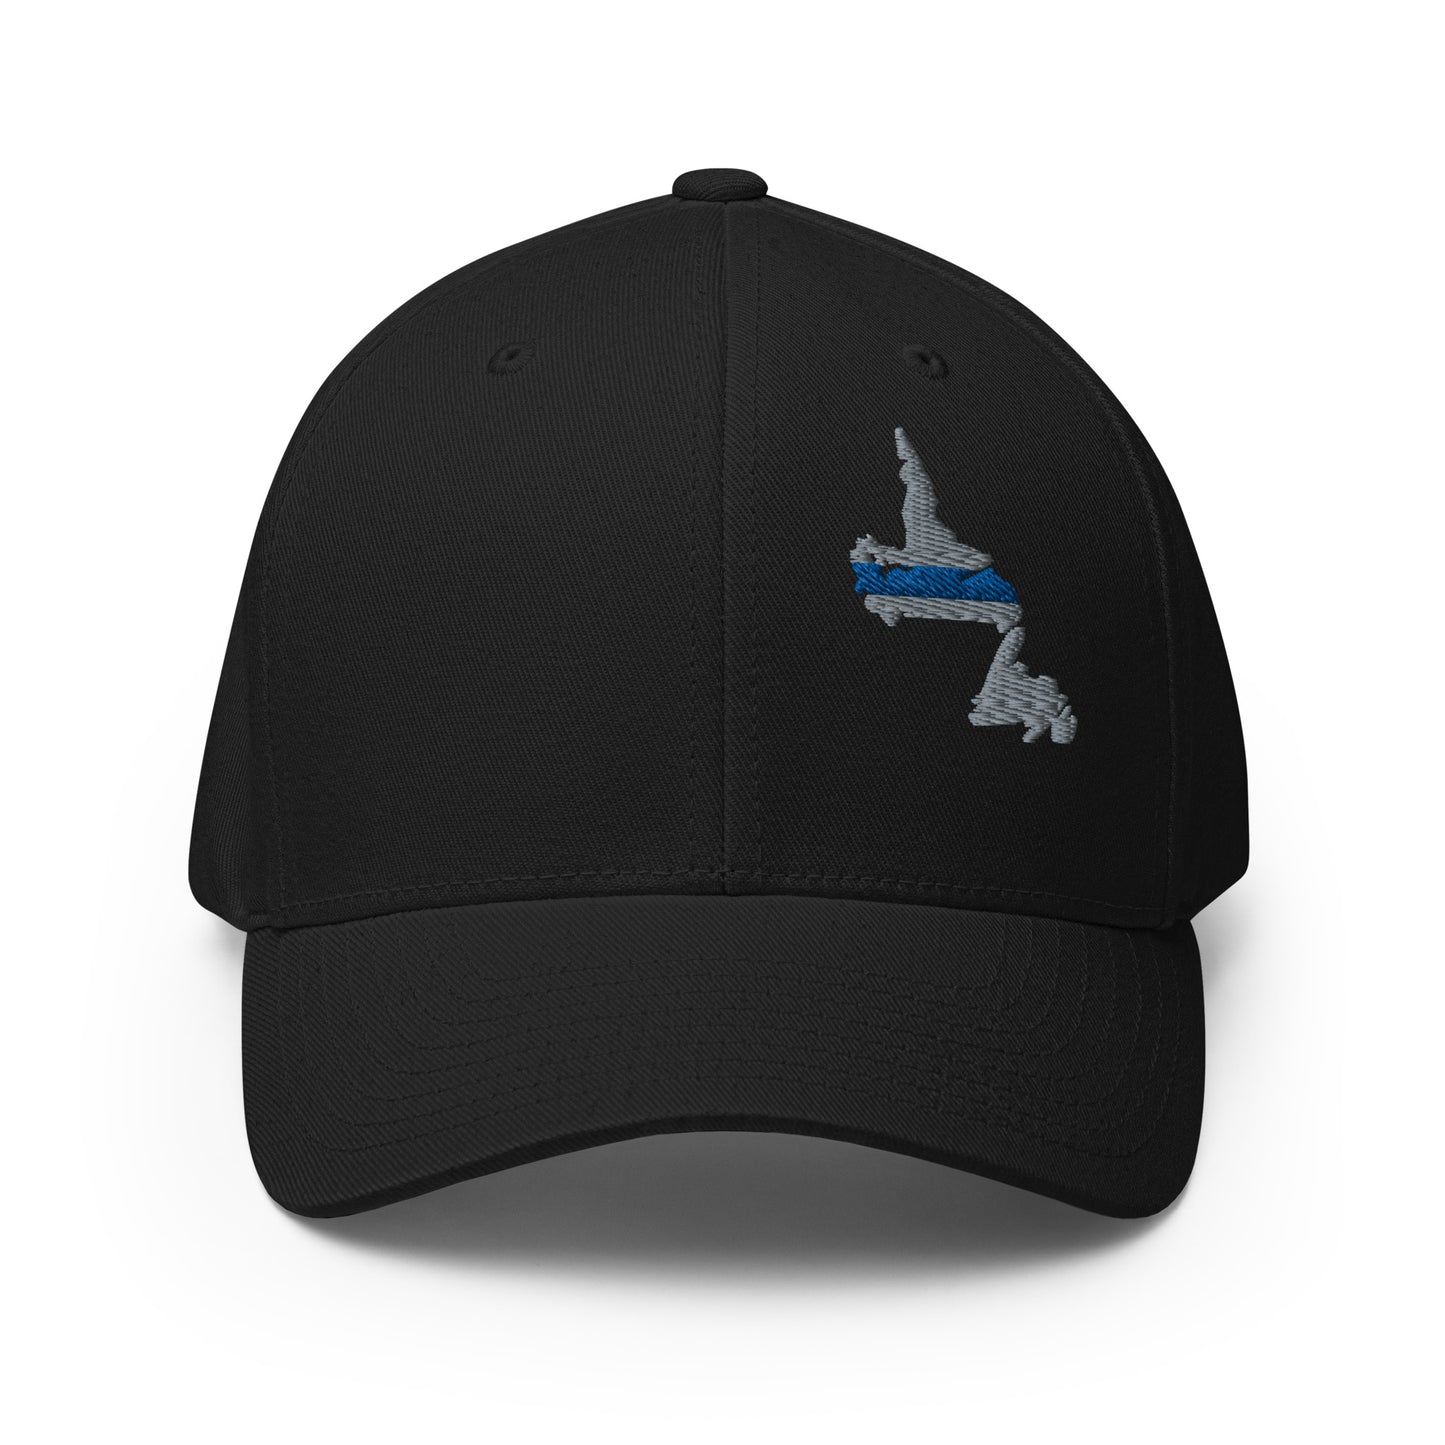 Newfoundland and Labrador (NFLD) Thin Blue Line Flexfit Ball Cap